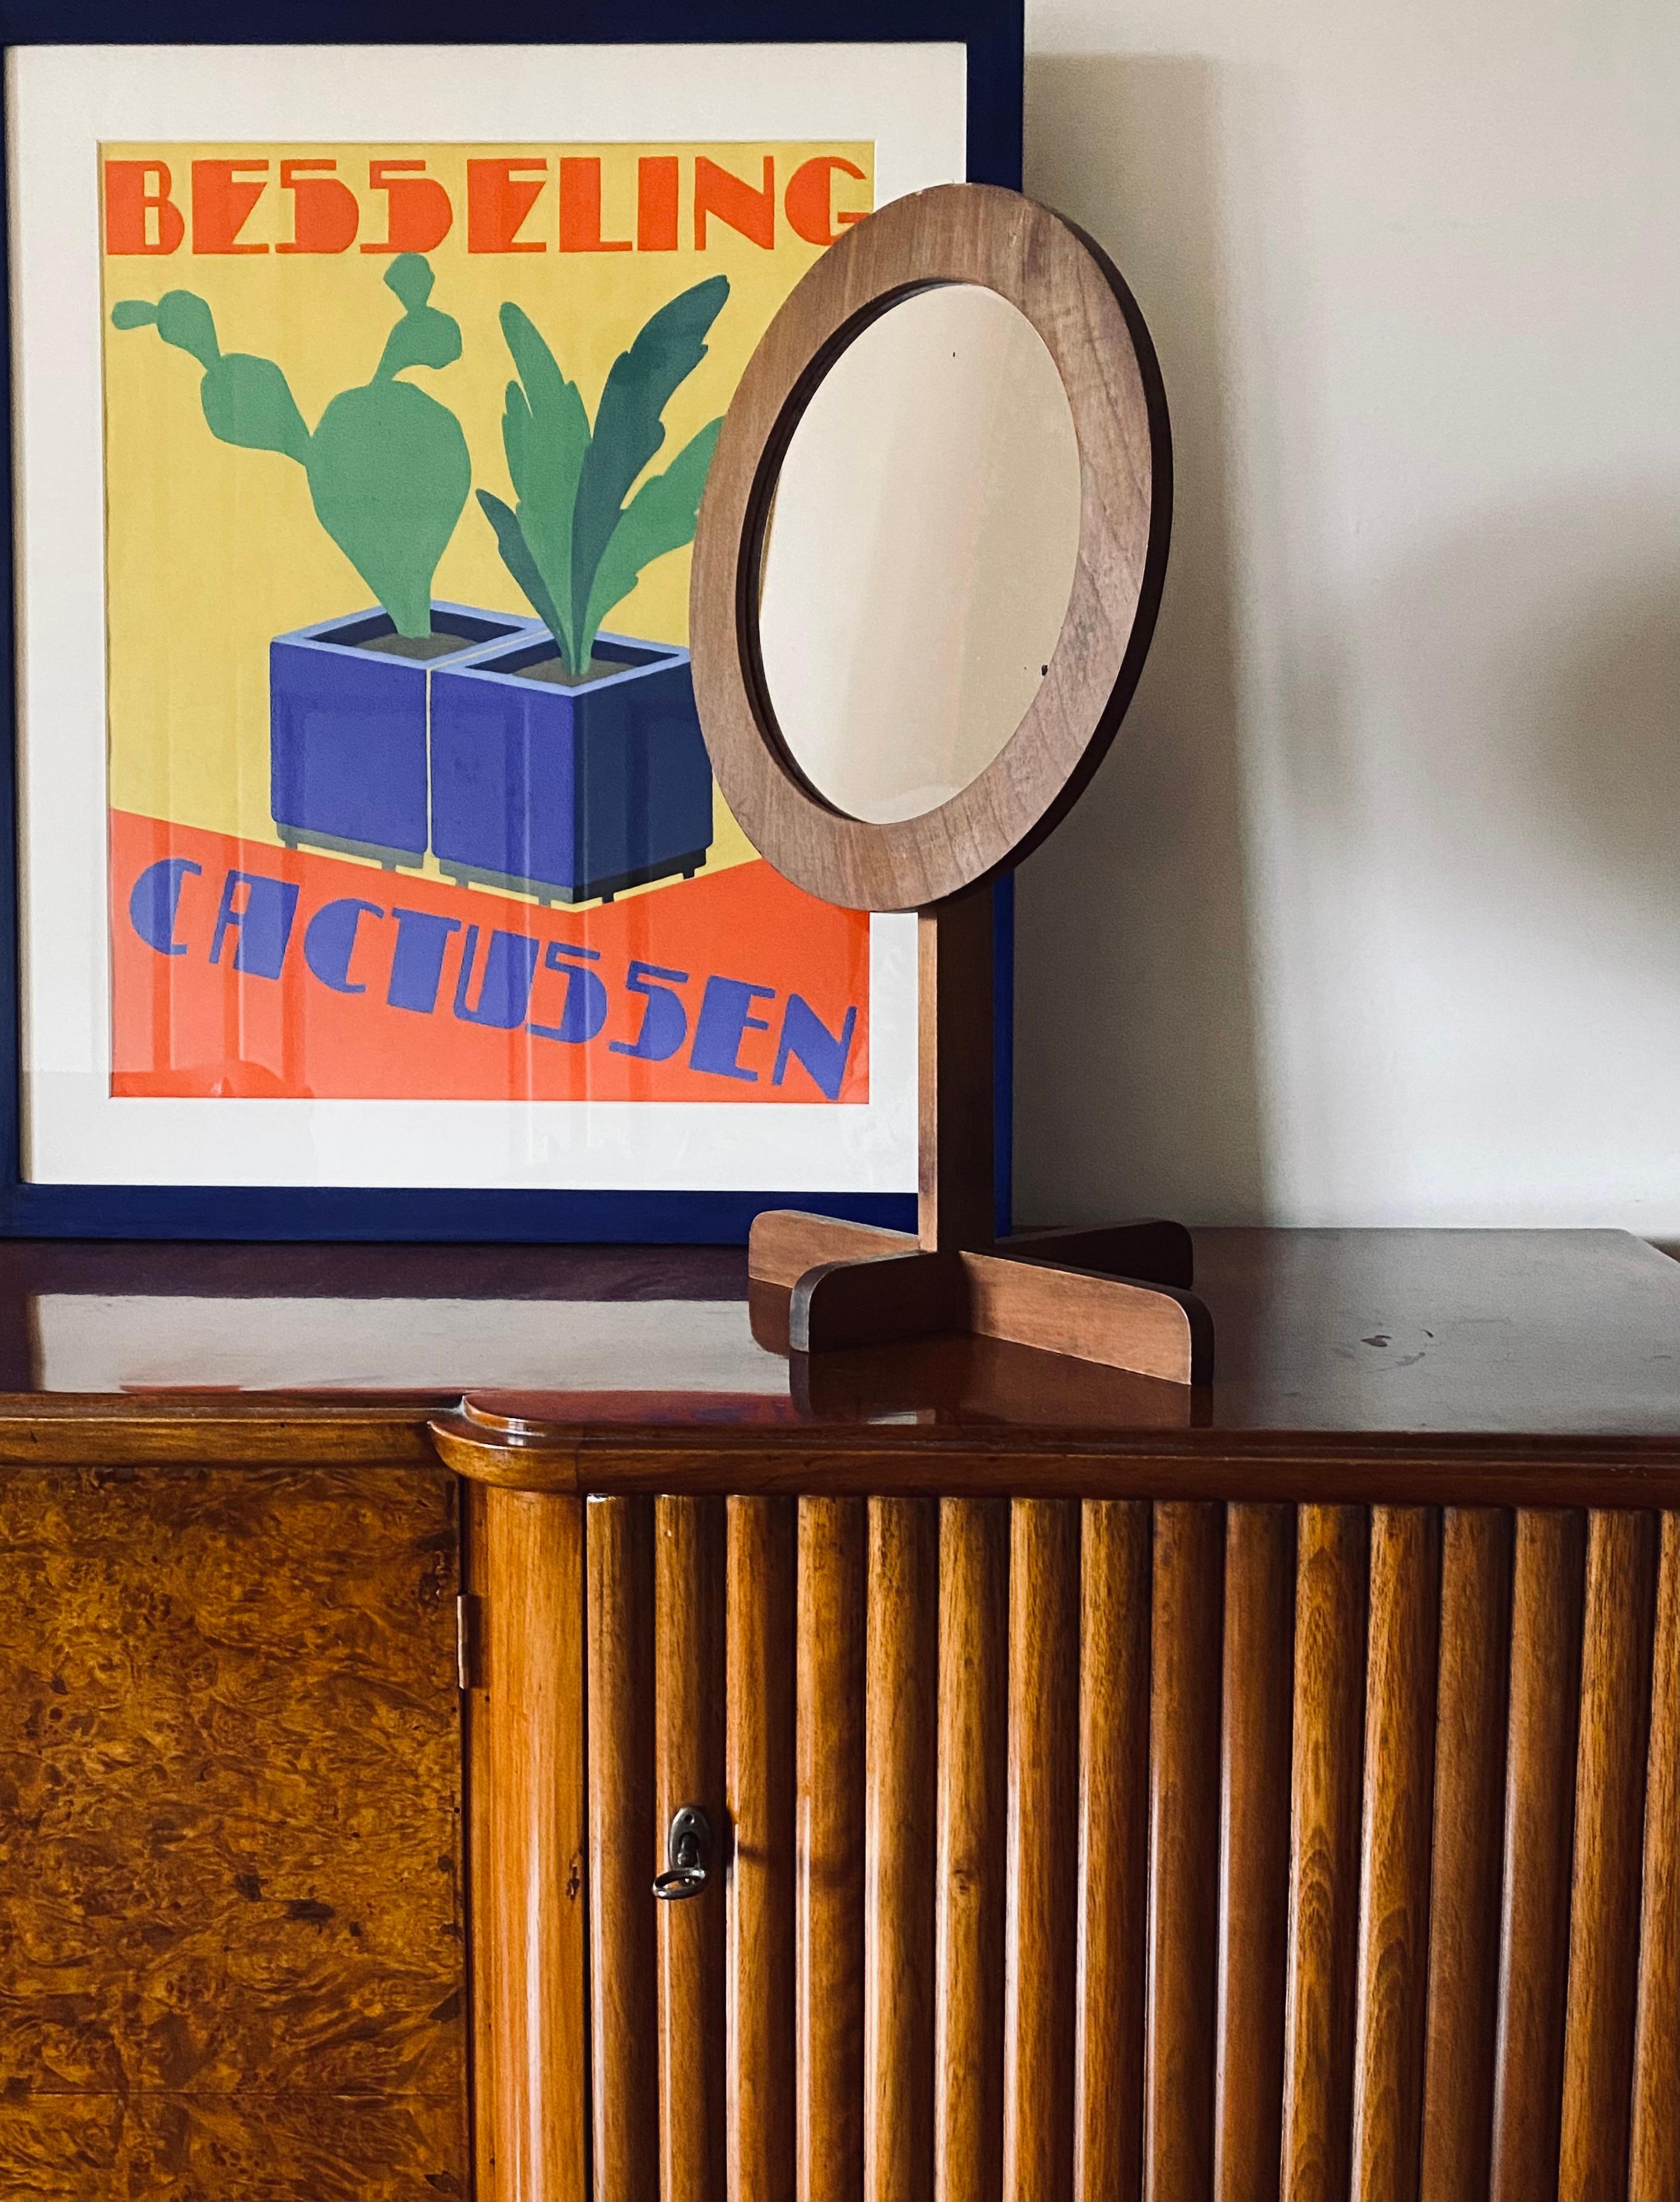 Tischspiegel / Eitelkeit aus der Mitte des Jahrhunderts

Frankreich 1960er Jahre

holz

H 52 x 32 x 27 cm

Zustand: sehr gut, dem Alter und der Nutzung entsprechend